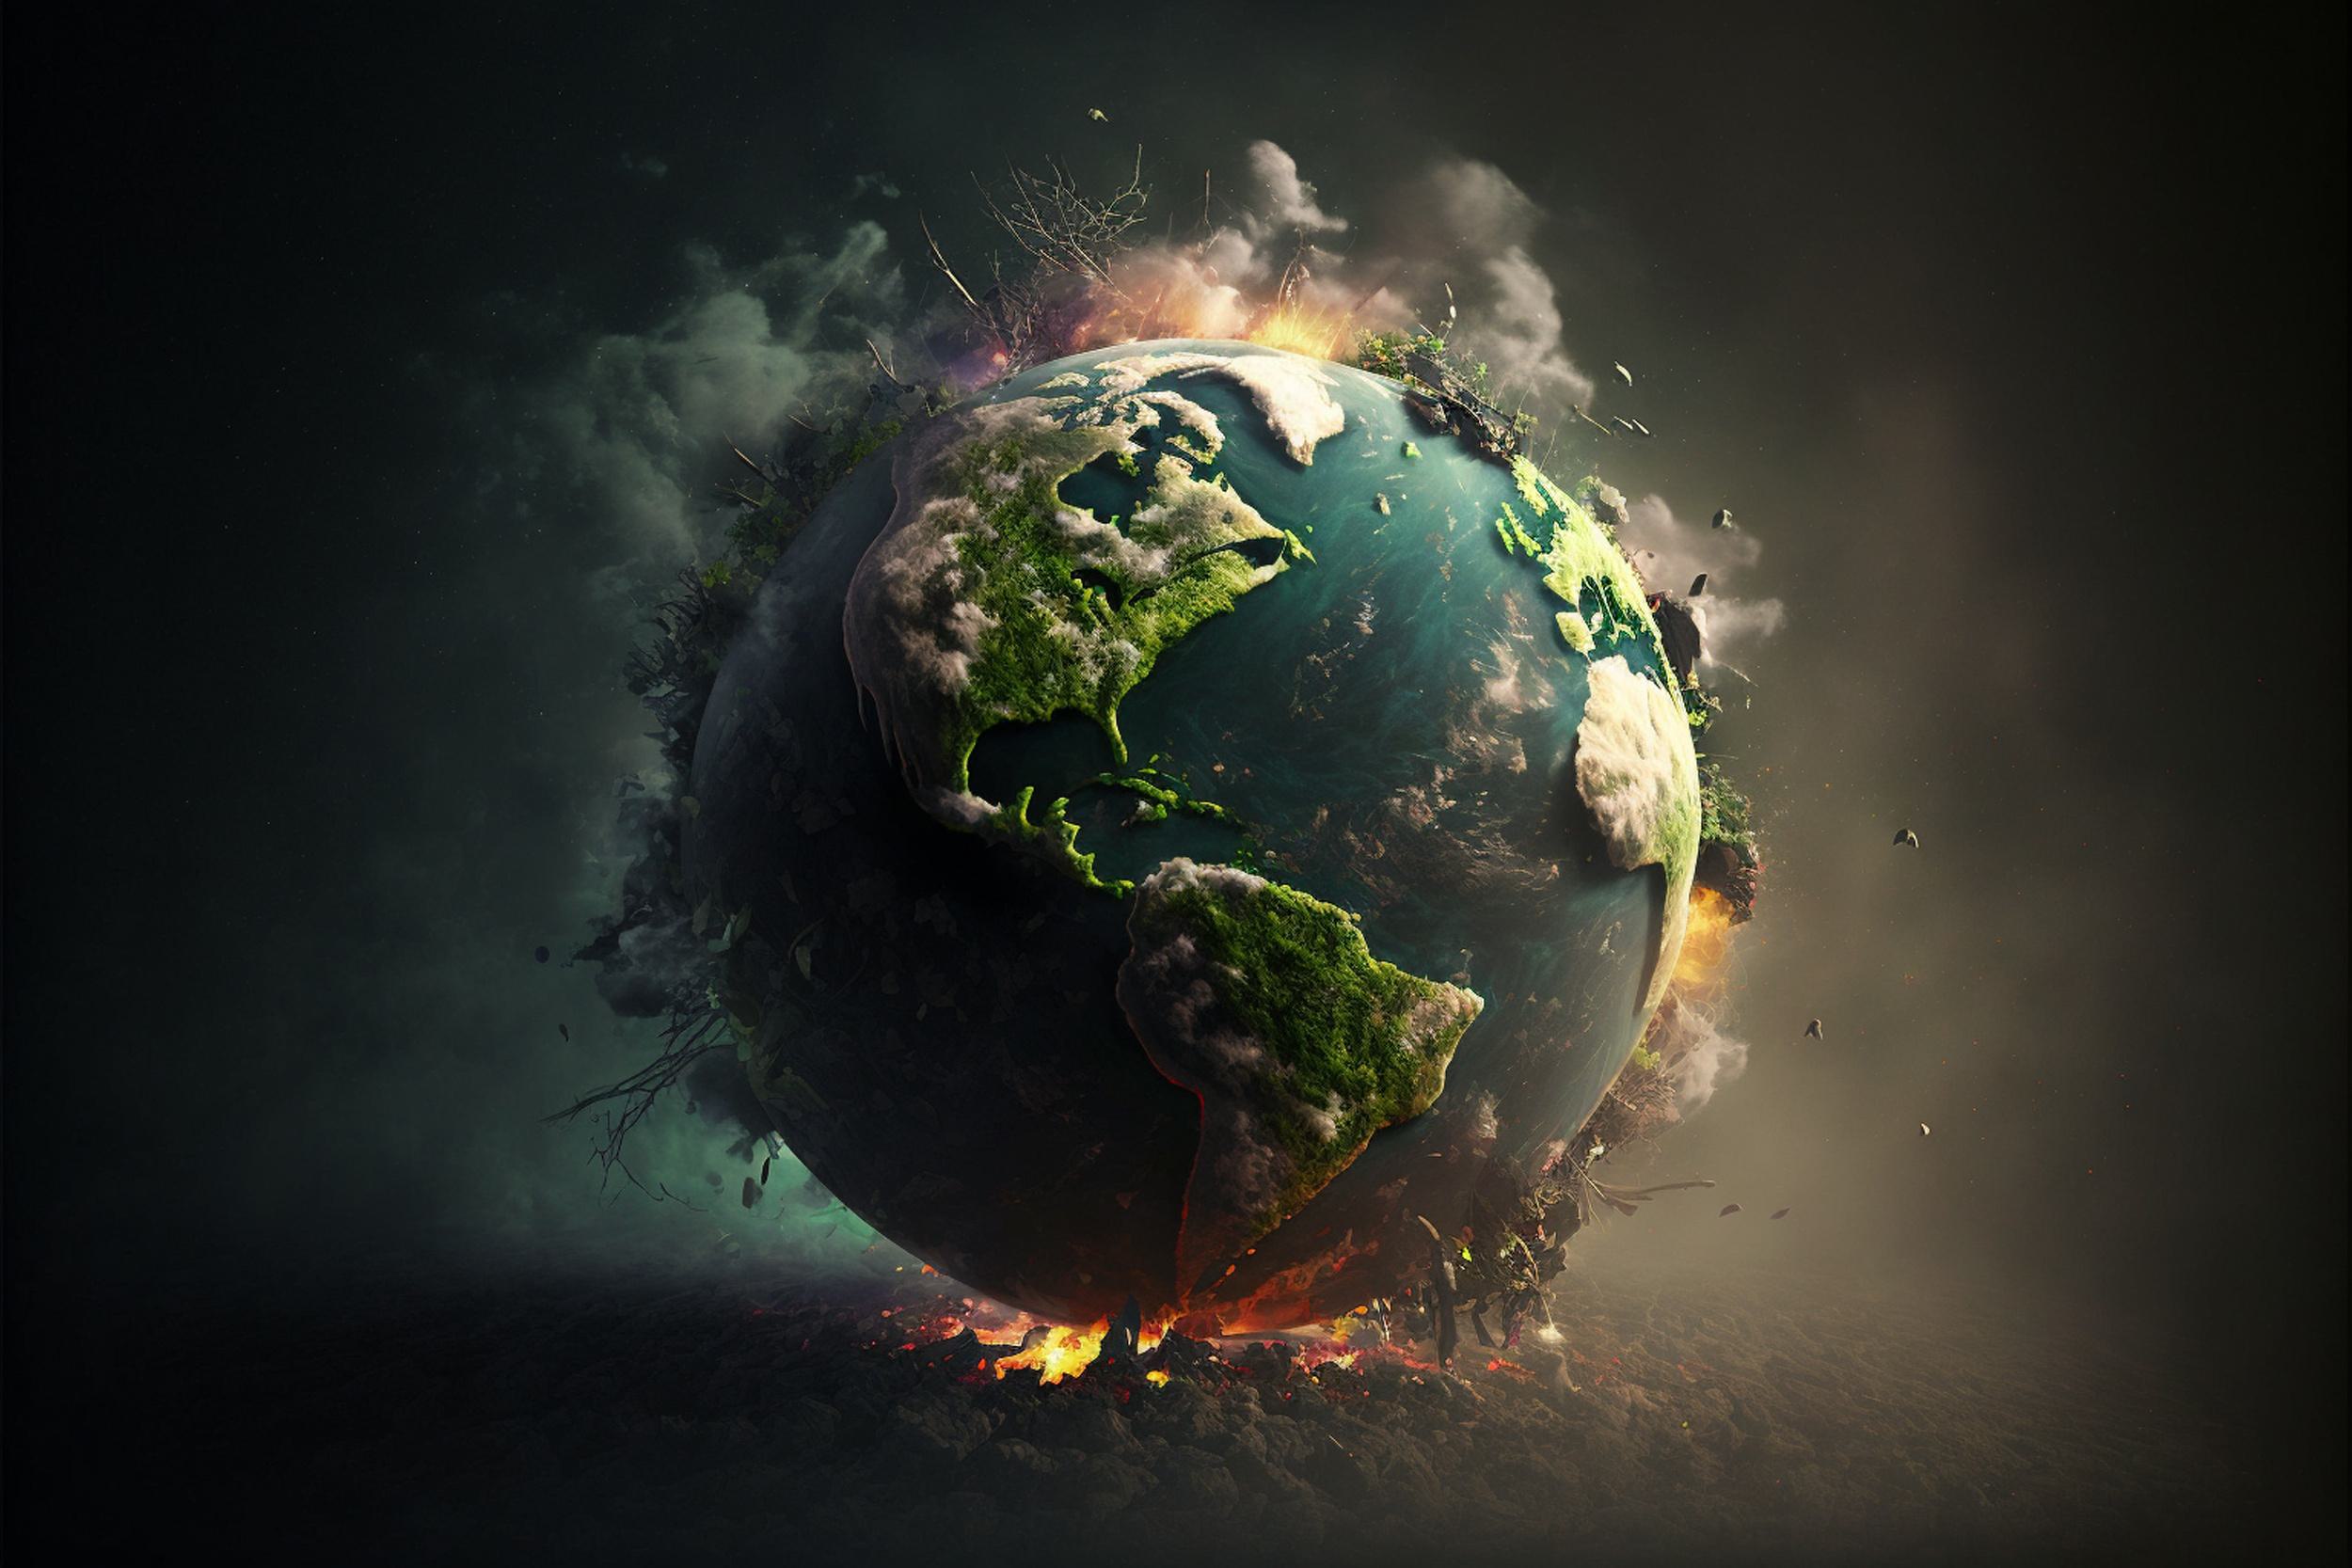 Klimaatideologen miskennen de rol van astronomie in klimaatverandering